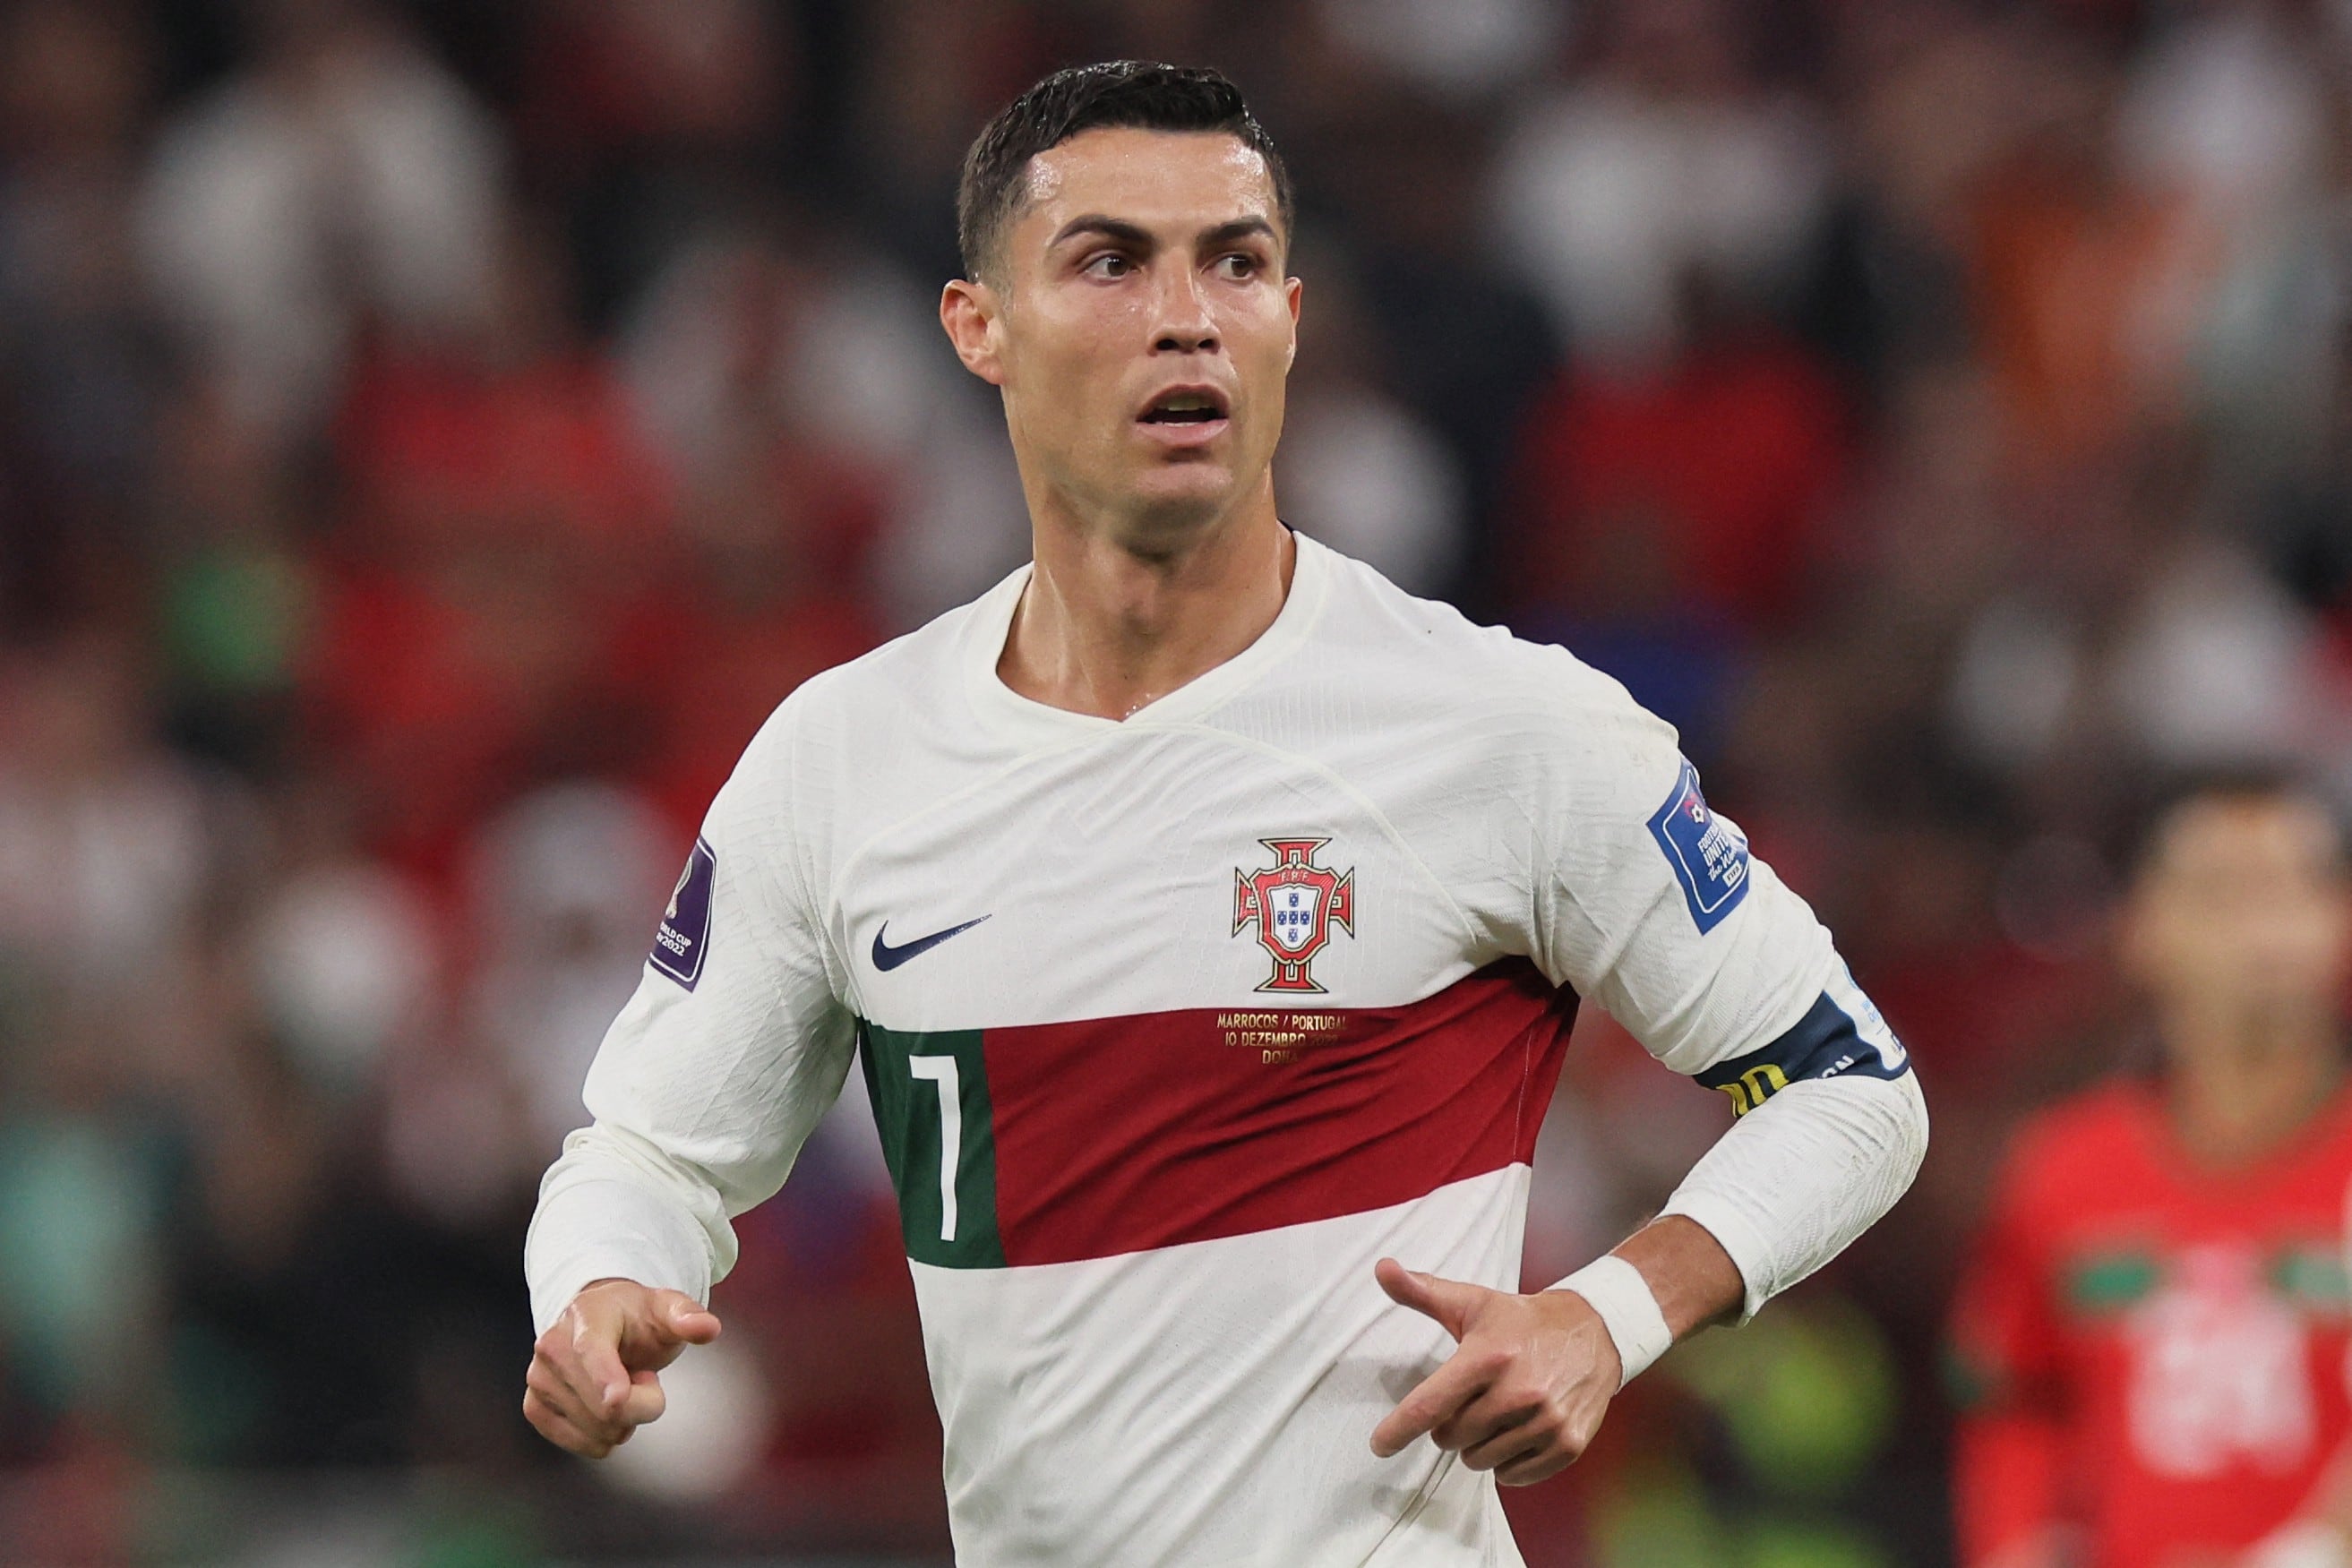 Qué jugador de Uruguay se llevó la camiseta de Cristiano Ronaldo